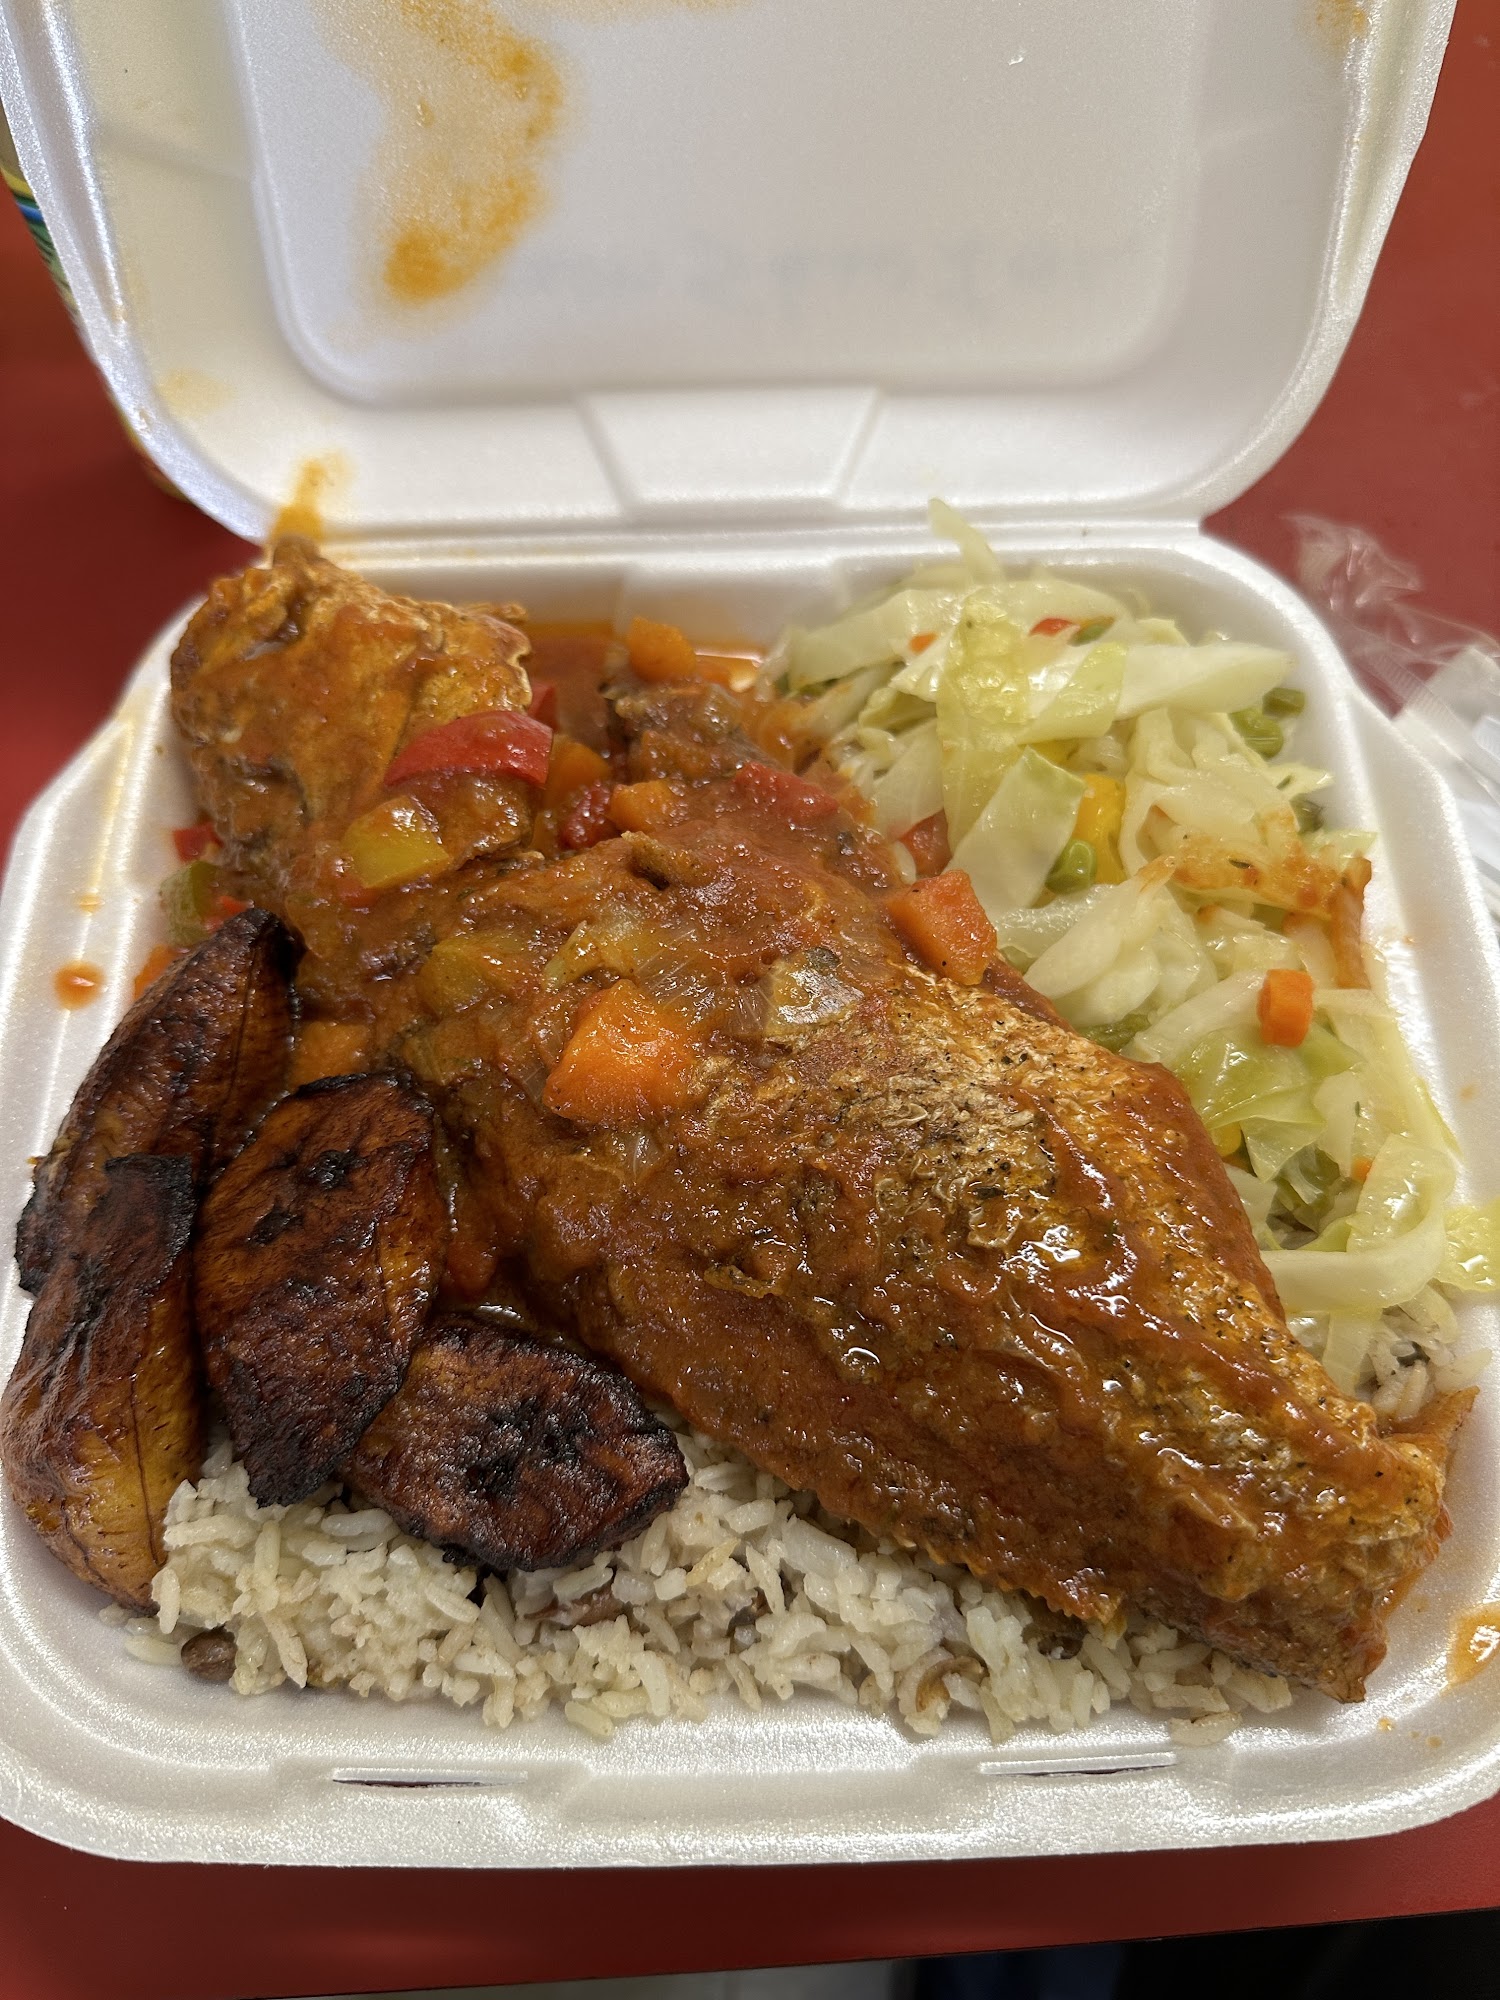 Sunbless Bakery/Jamaican Restaurant